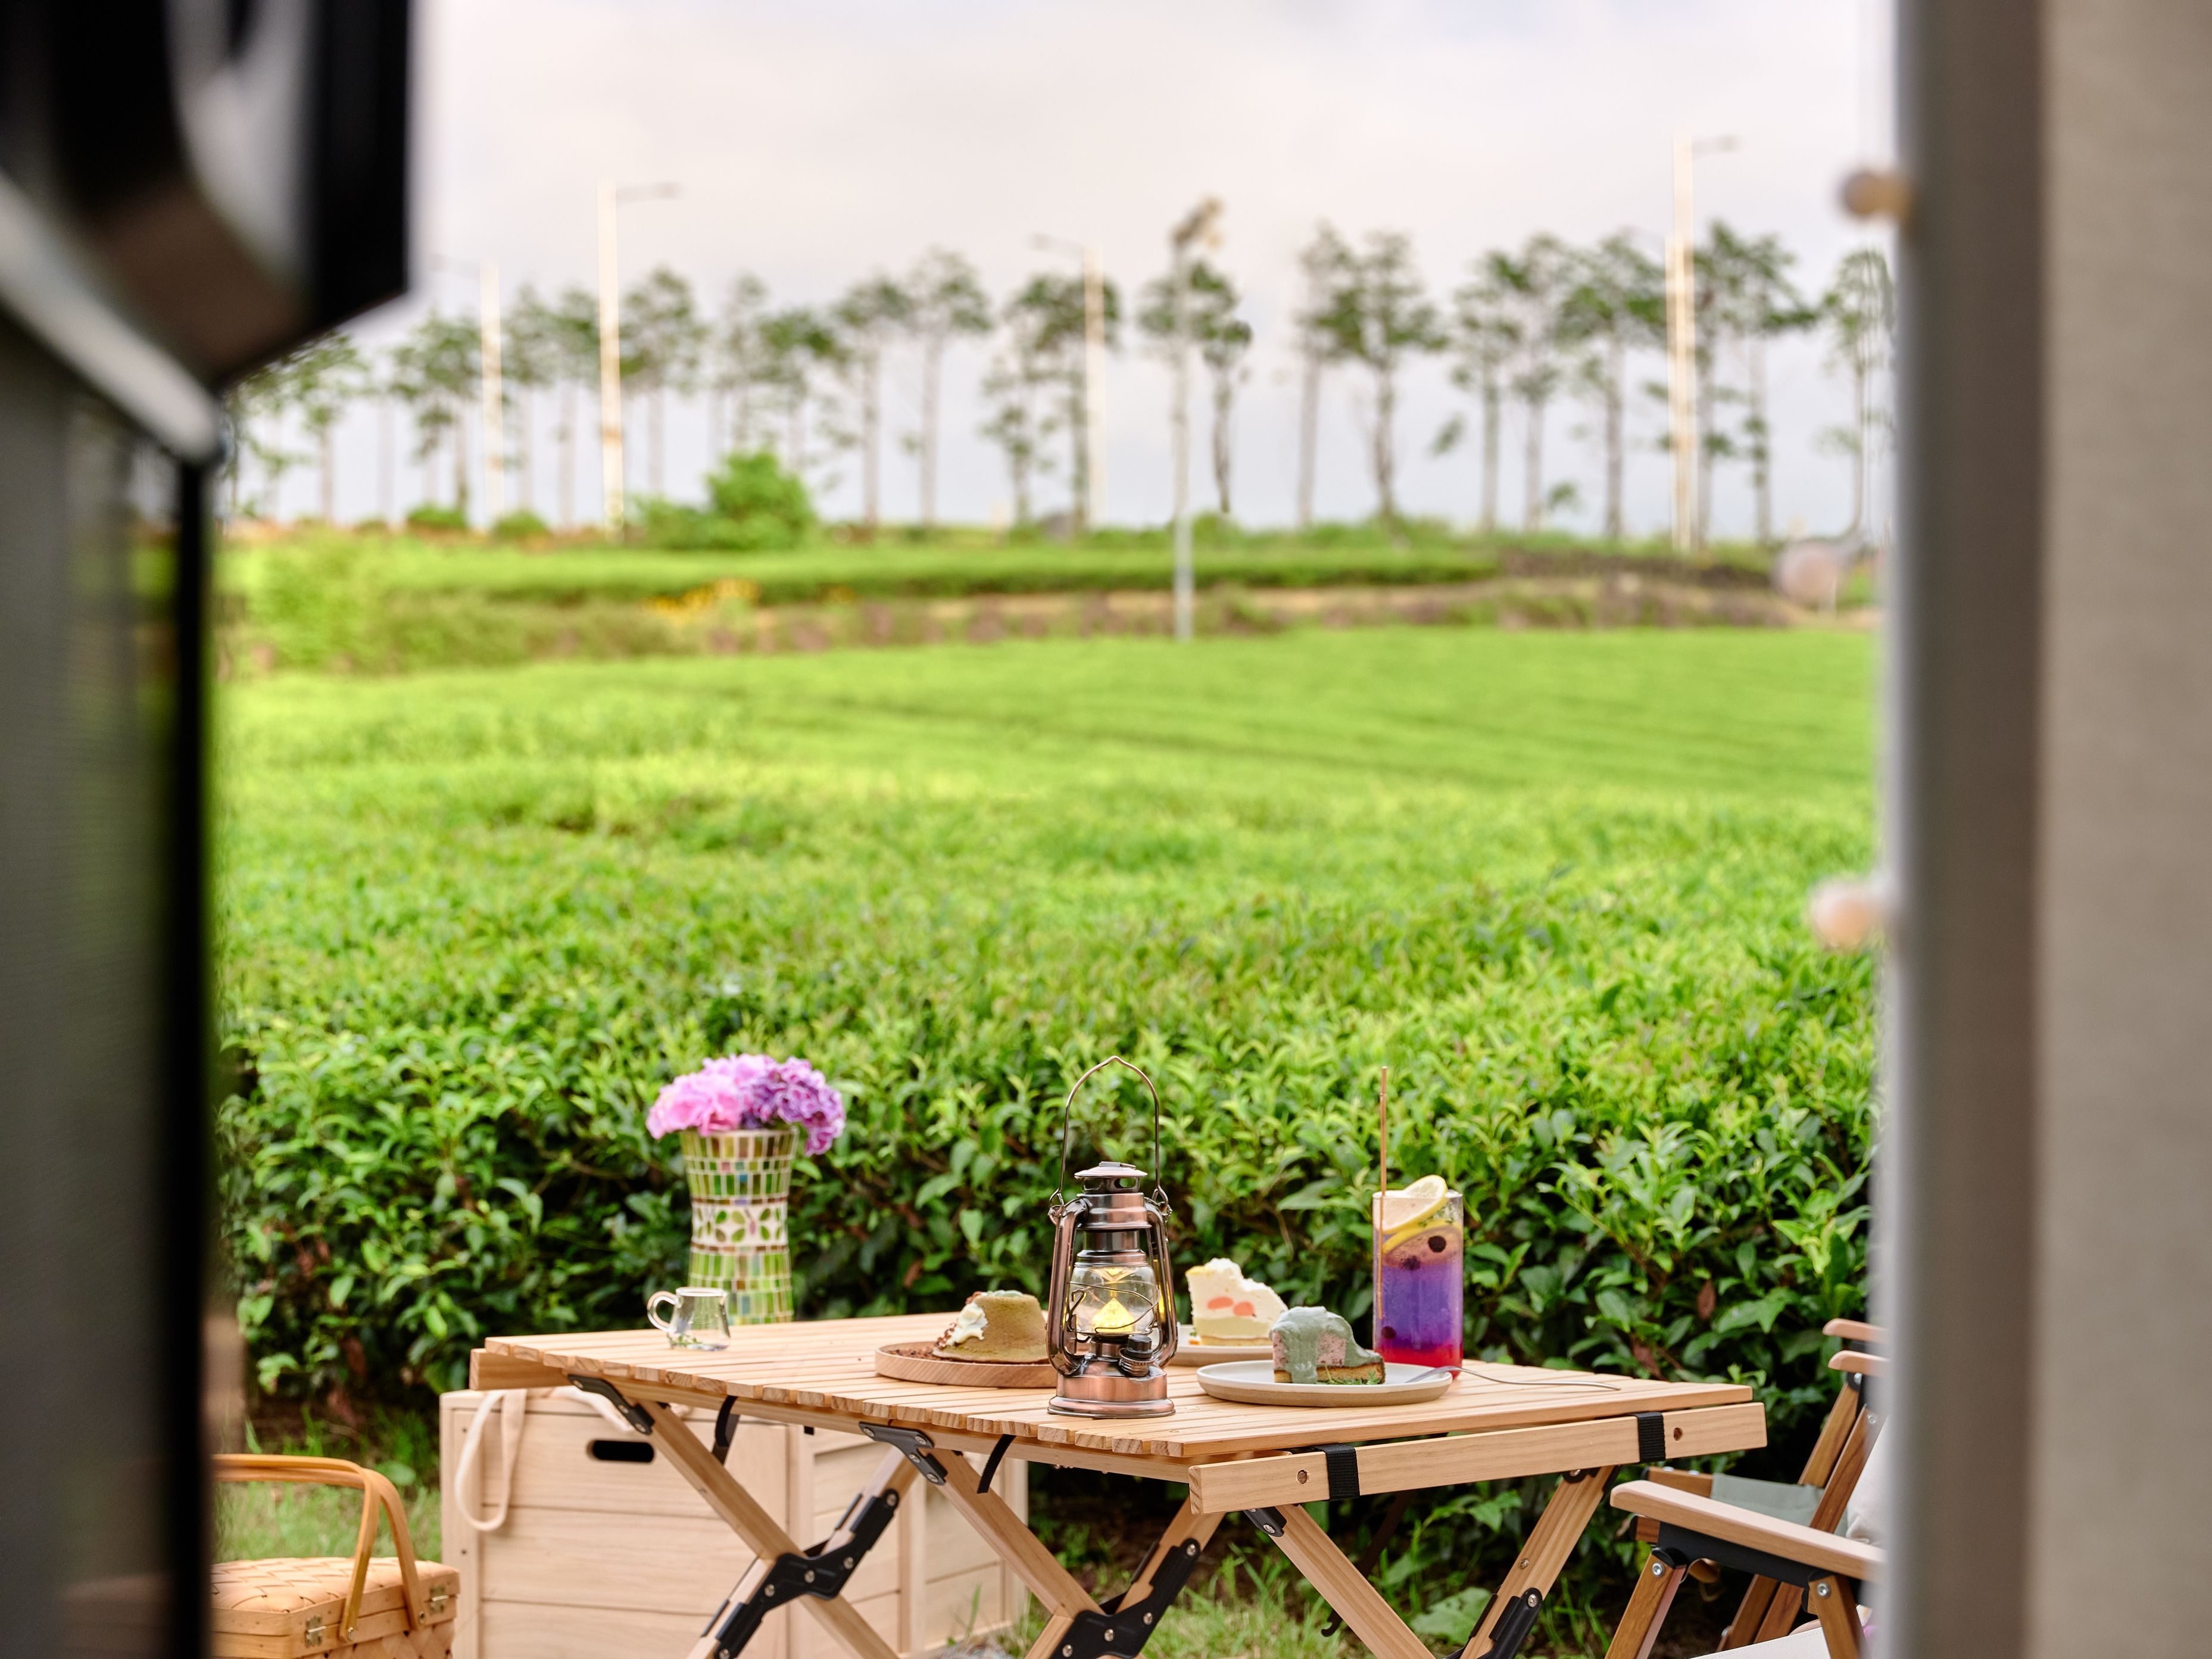 Innisfree opens Jeju Island green tea farms on Airbnb